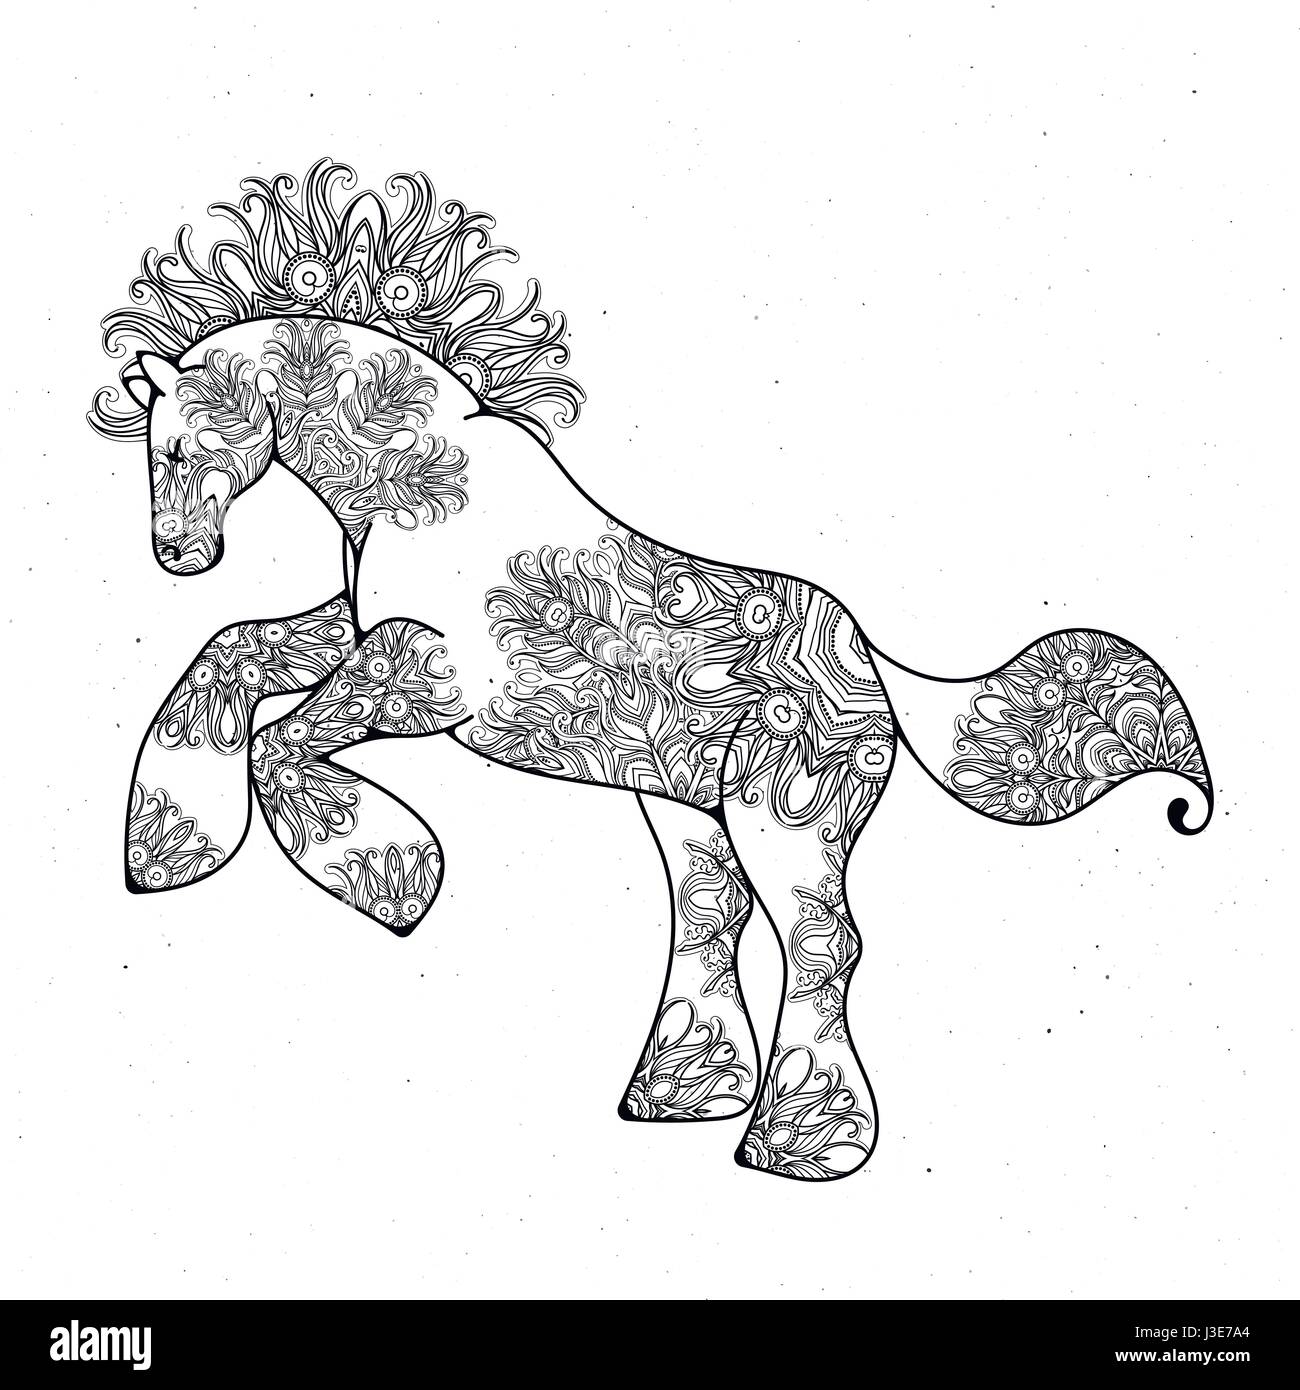 Antistress Pagina Lineare Con Cavallo Zentangle Animale Per Il Libro Da Colorare Biglietto Di Auguri Mandala Elemento Di Decoro Arte Terapia Immagine E Vettoriale Alamy